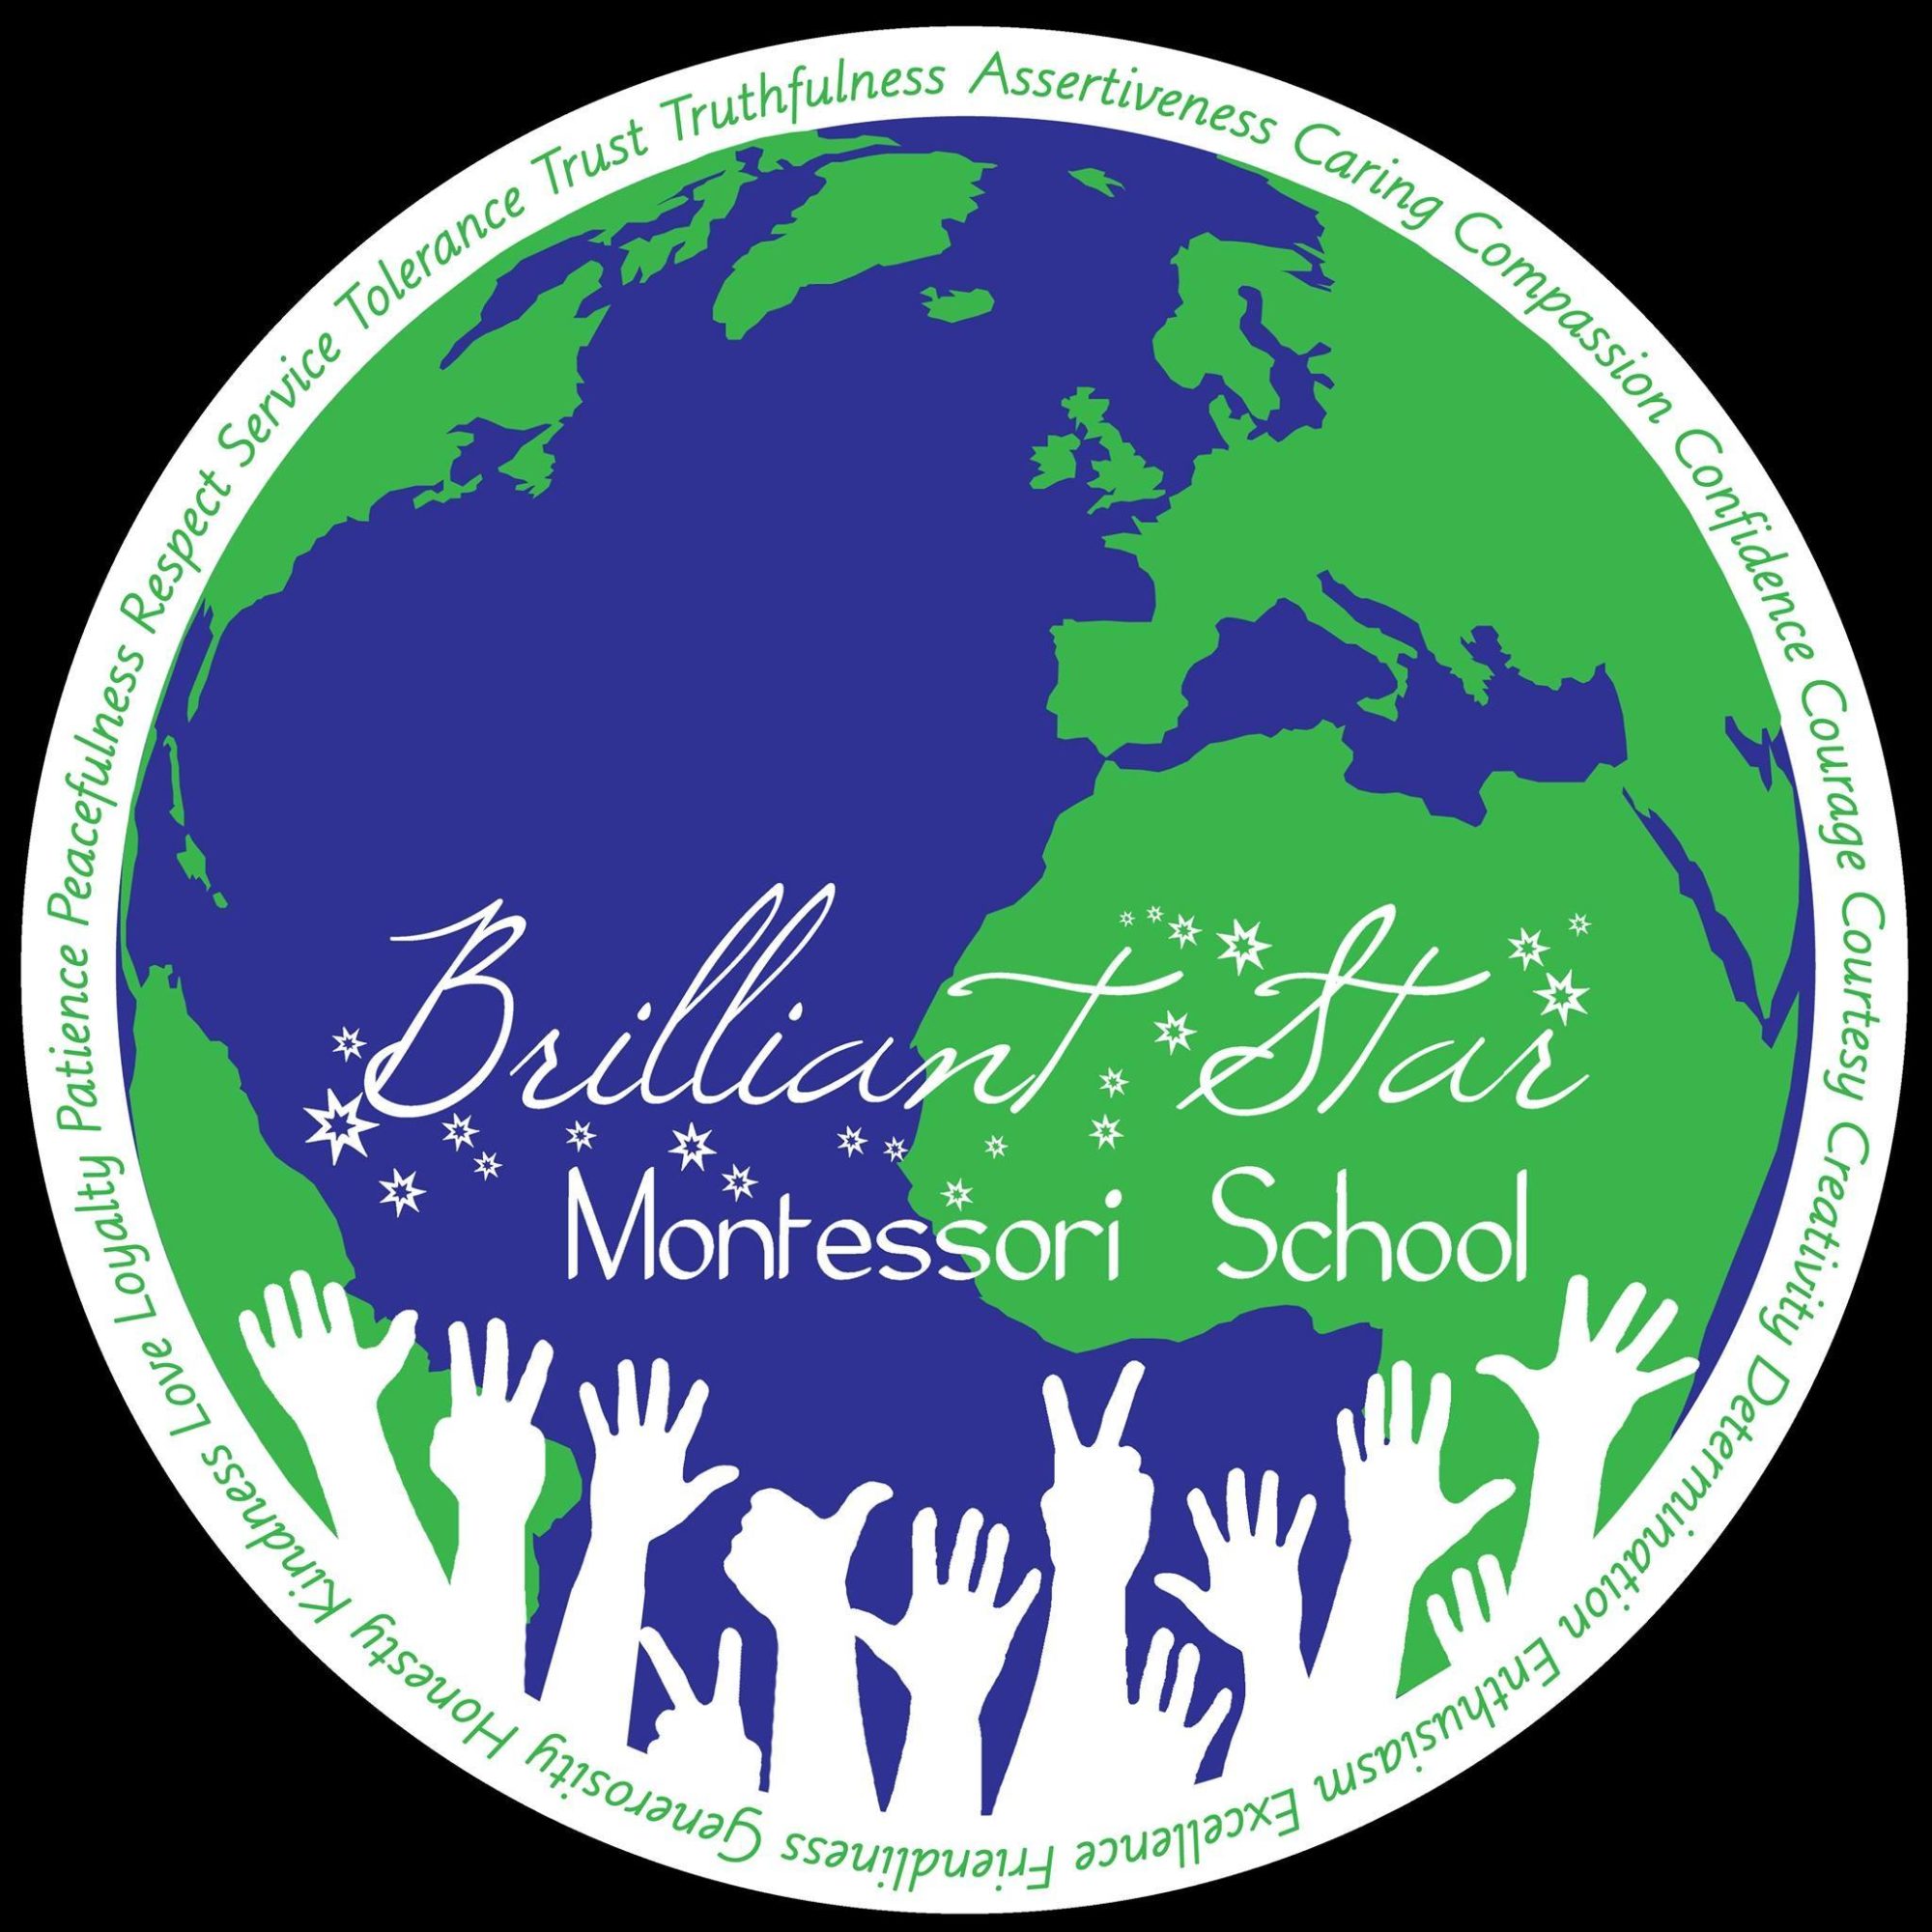 Brilliant Star Montessori School